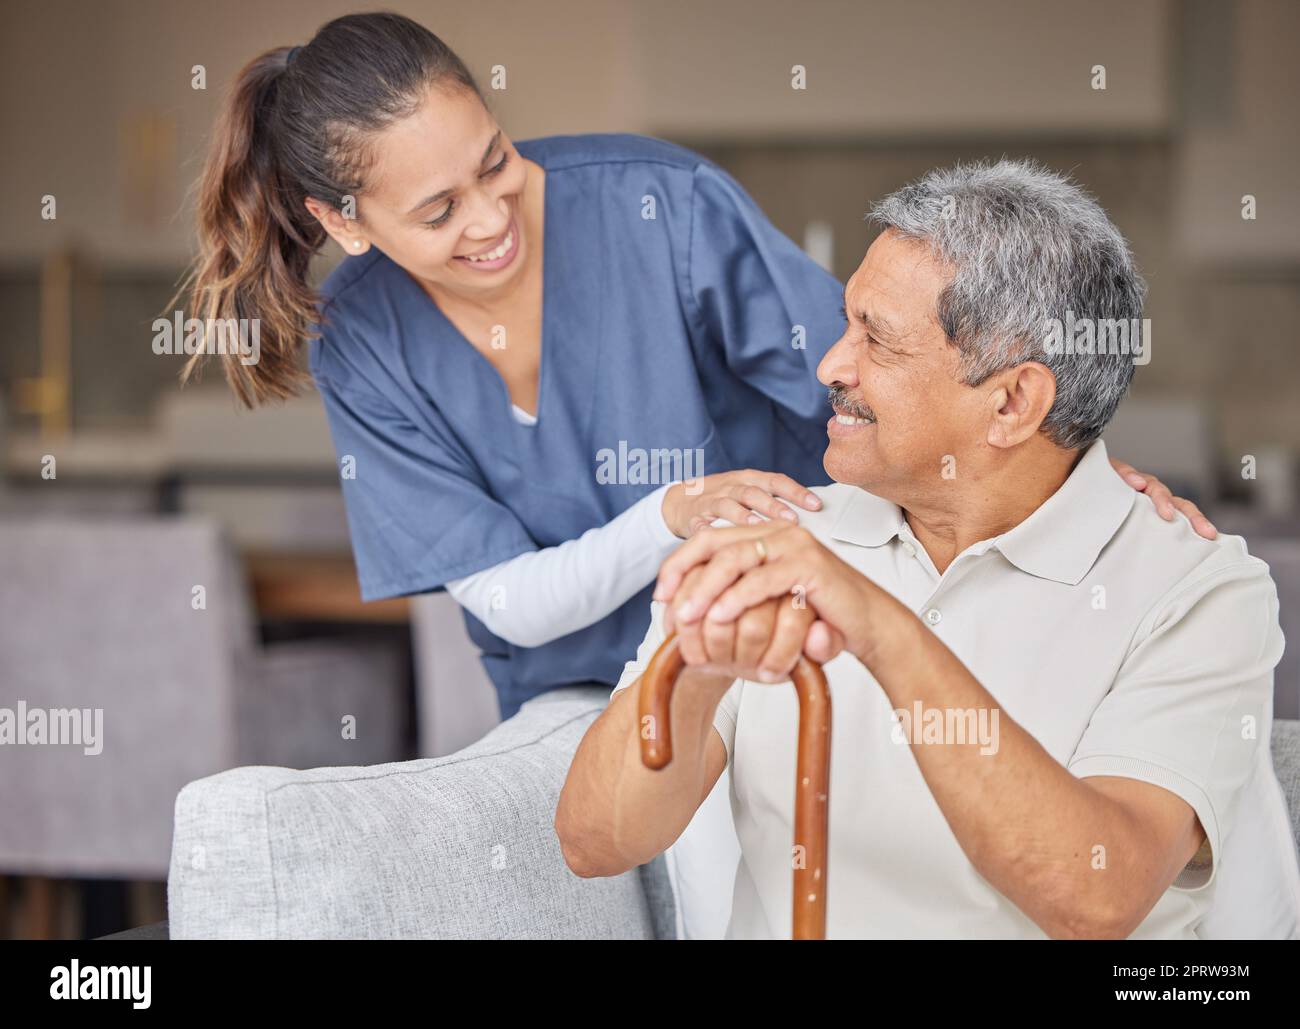 Assistenza sanitaria, gentilezza e supporto con l'infermiera che aiuta i pazienti anziani nella casa di riposo assistita, sorriso e contenuti. Uomo anziano felice che si unisce a un assistente cordiale, parla e ridi insieme sul divano Foto Stock